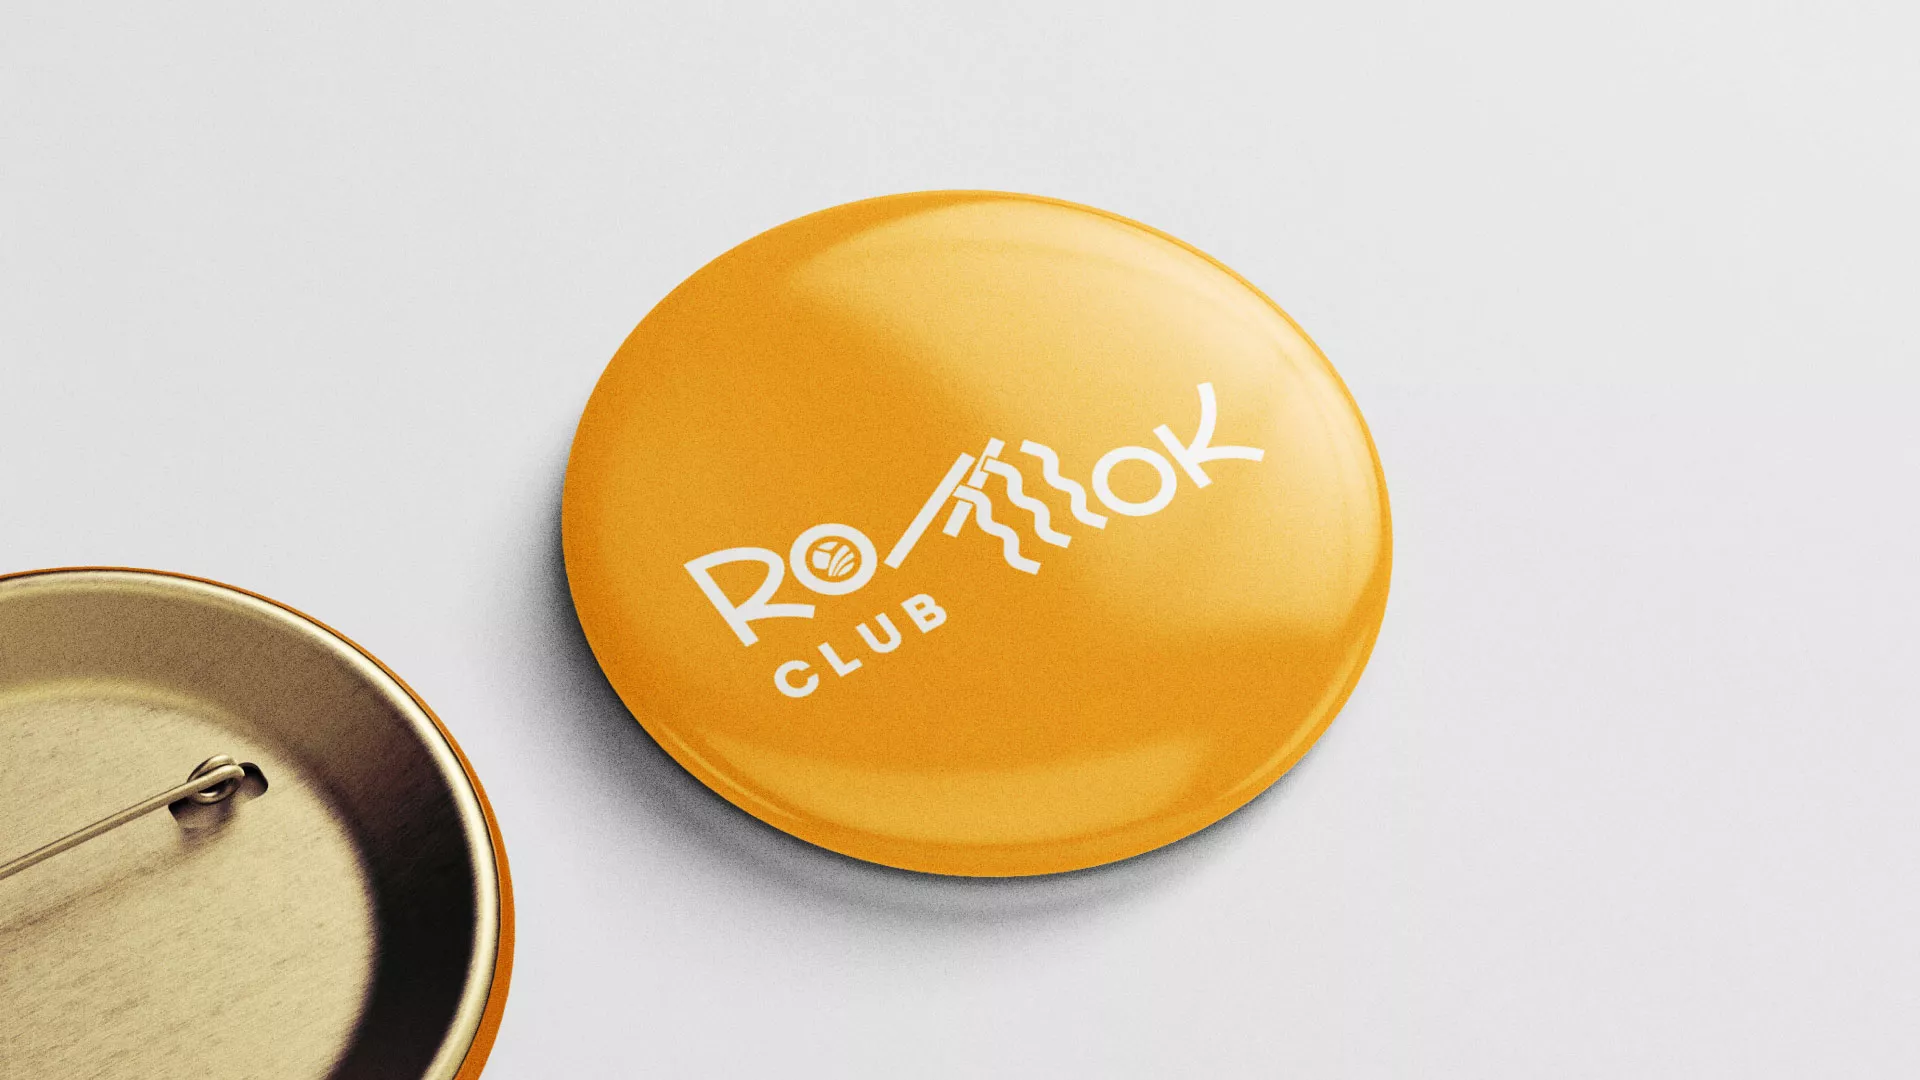 Создание логотипа суши-бара «Roll Wok Club» в Козьмодемьянске